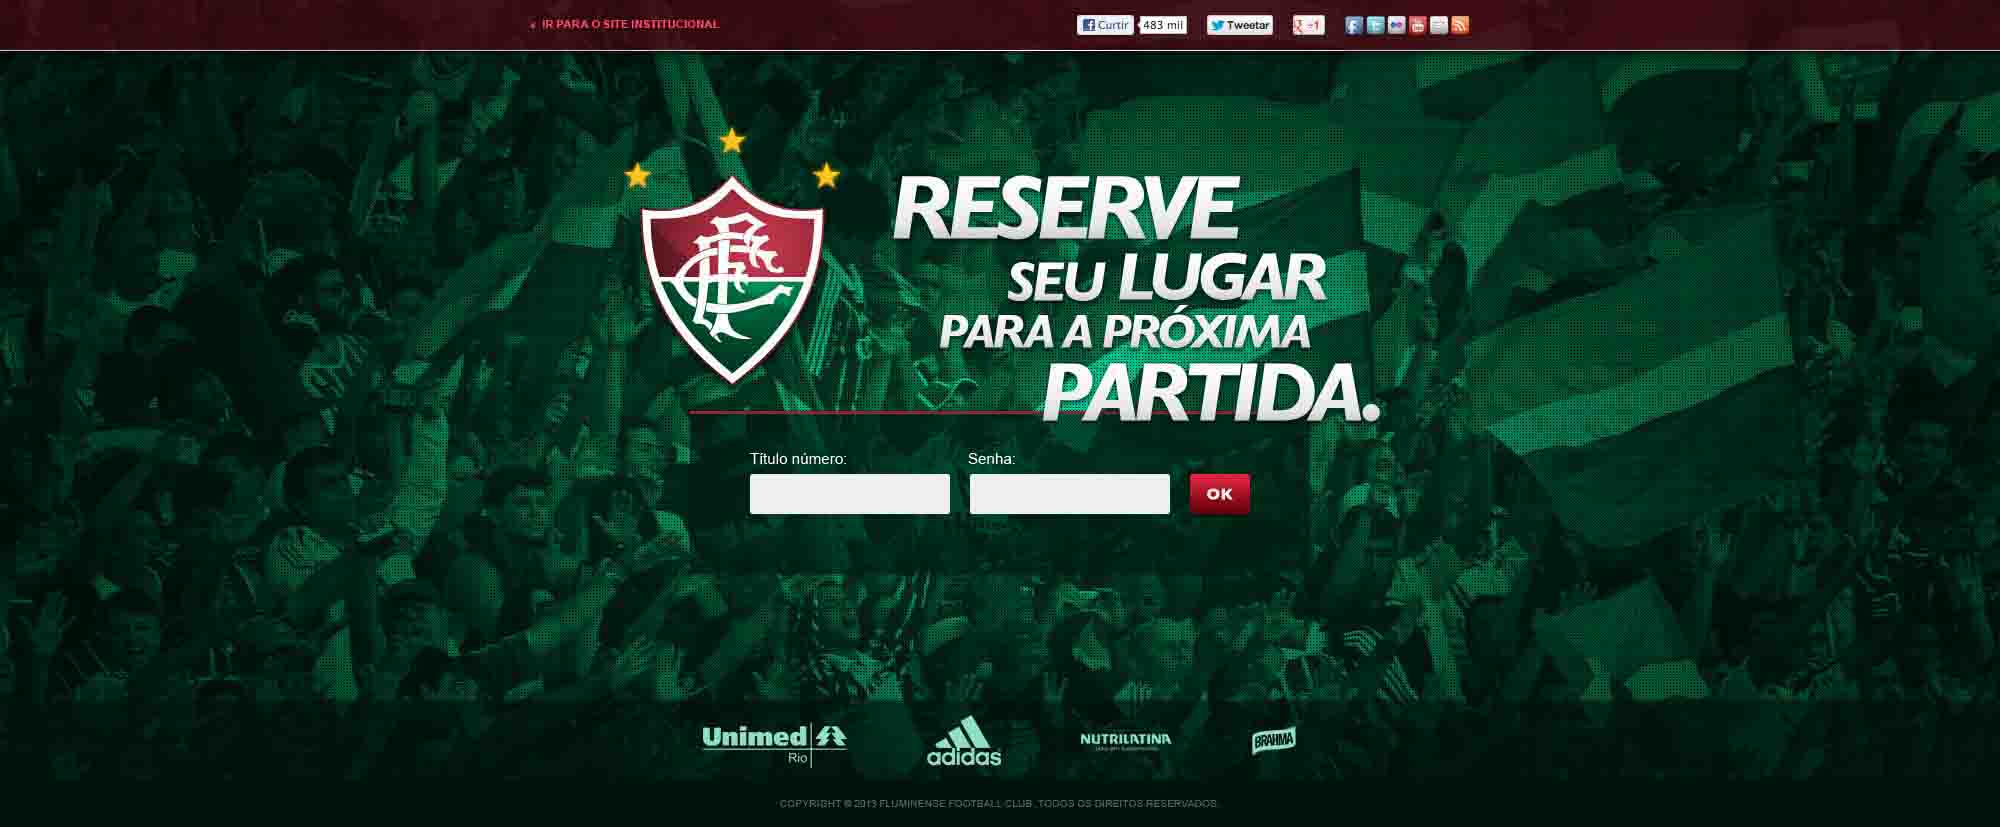 Fluminense Hotsite - webdesign e desenvolvimento